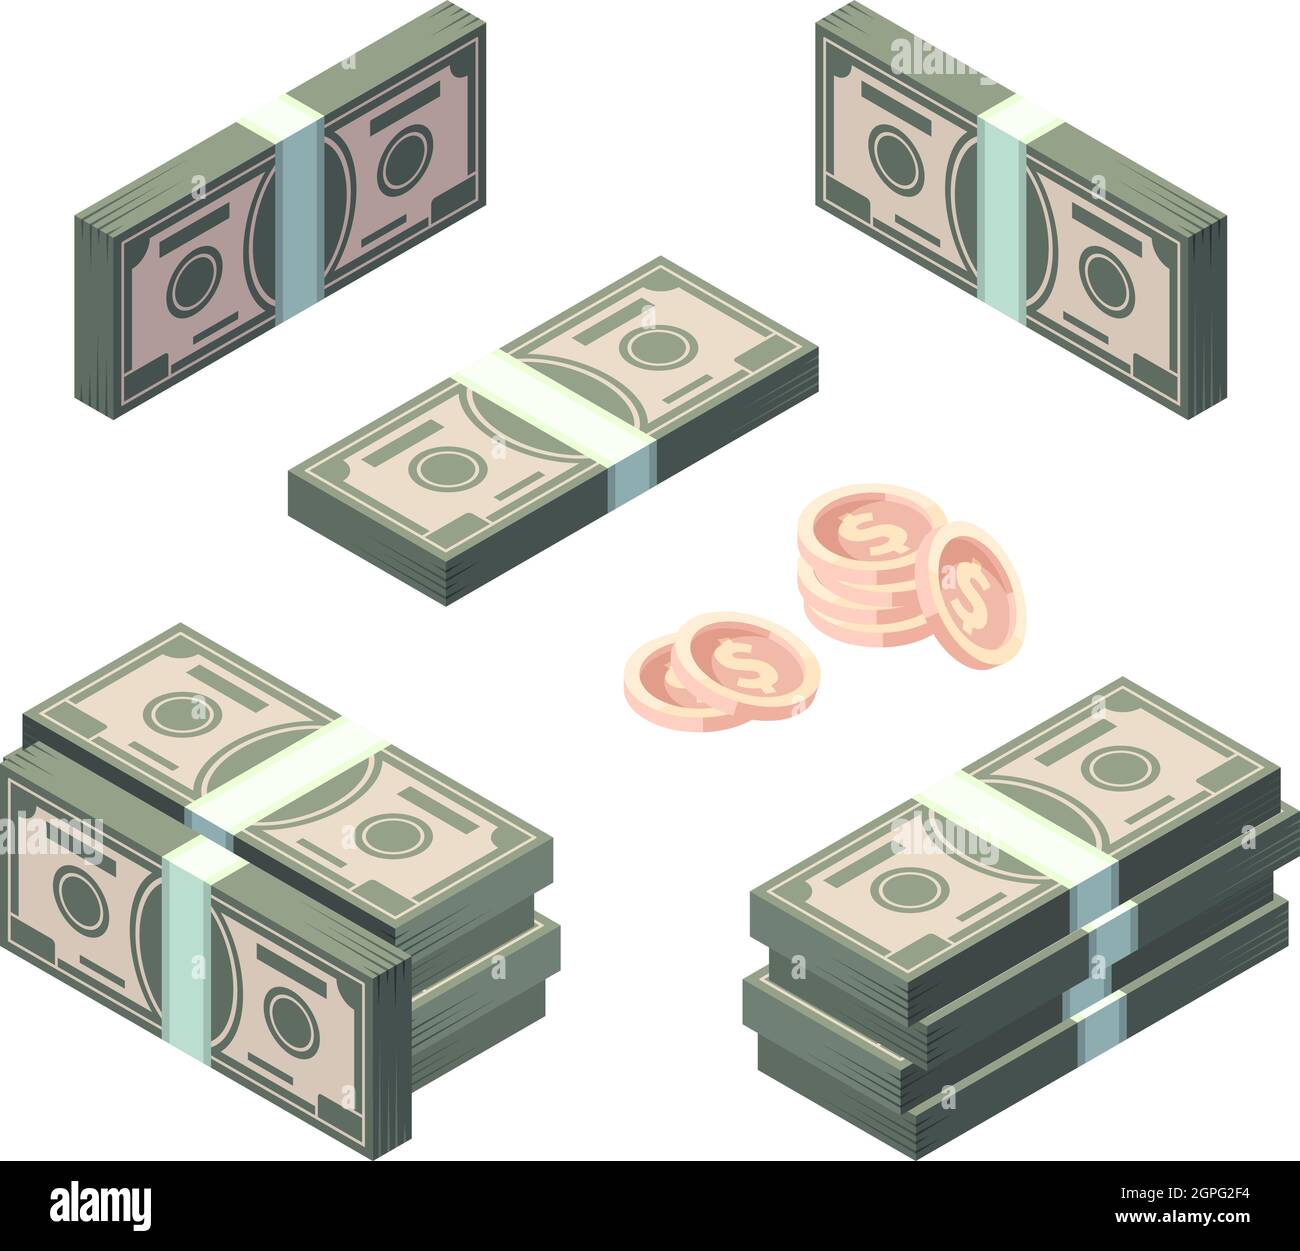 Geld isometrisch. Cash Goldmünzen und Dollar Finanzen Banking Symbole Vektor Sammlung Set Stock Vektor